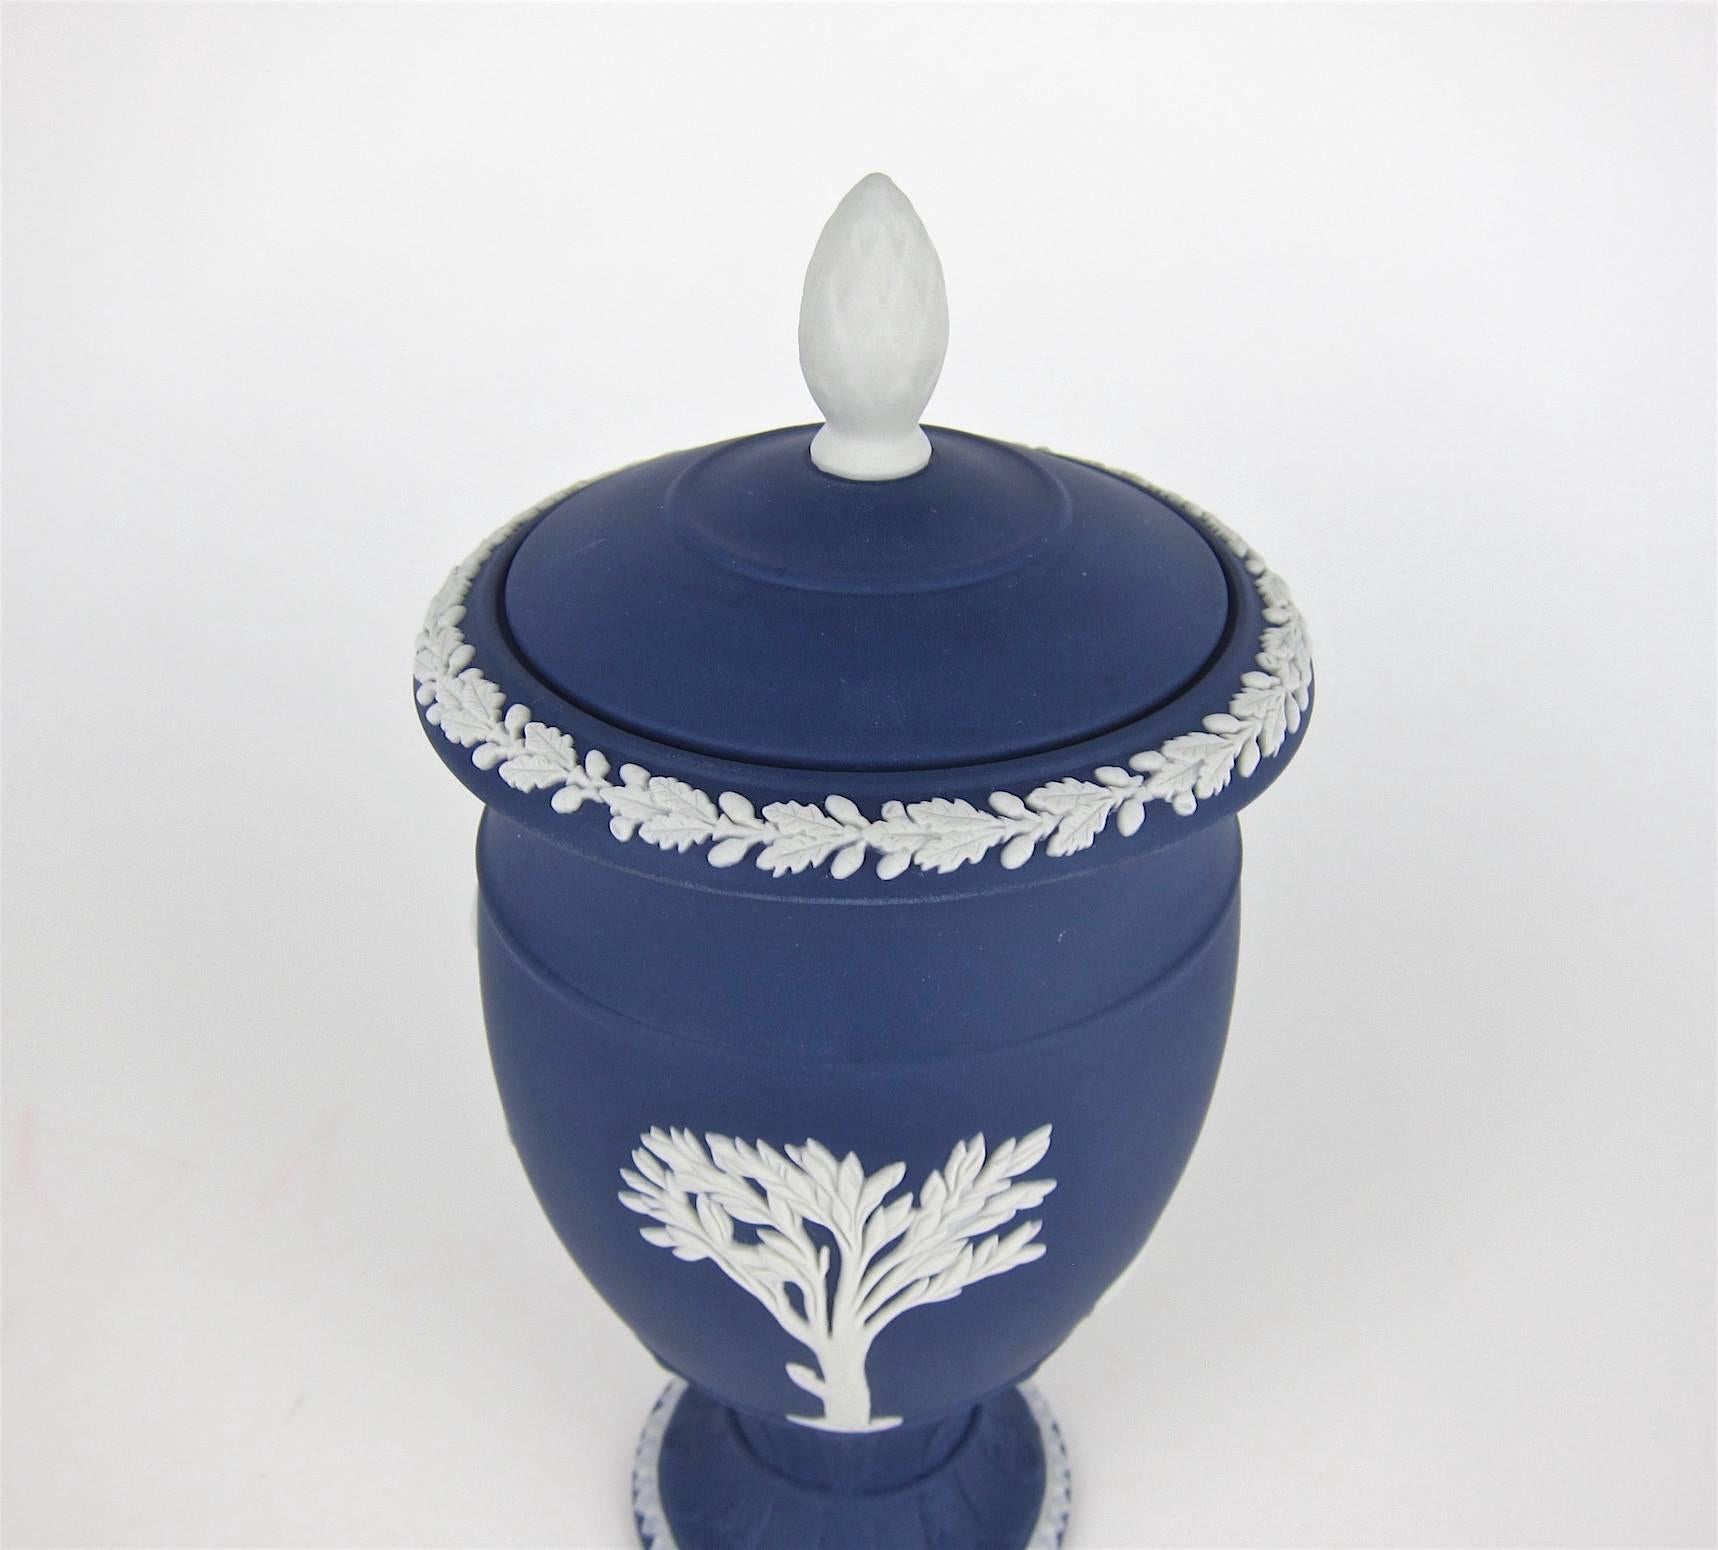 English Wedgwood Classical Covered Urn in White on Portland Blue Jasper Ware